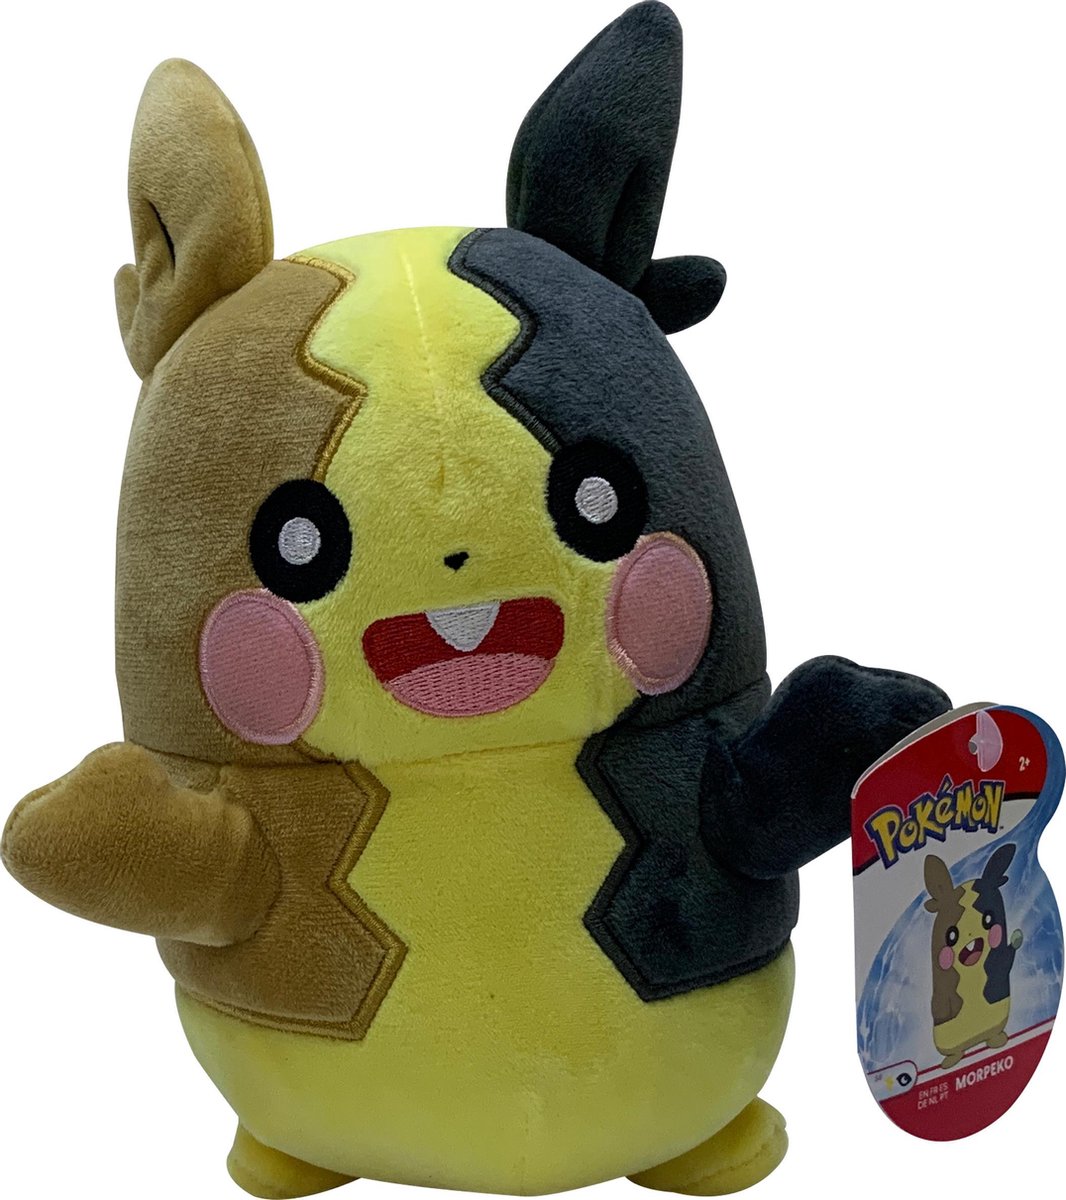 Pokemon Knuffel Morpeko 23cm| GIFT QUALITY | Pokemon Plush | 8 inch plush | | Origineel met licentie | Pokemon speelgoed voor kinderen |